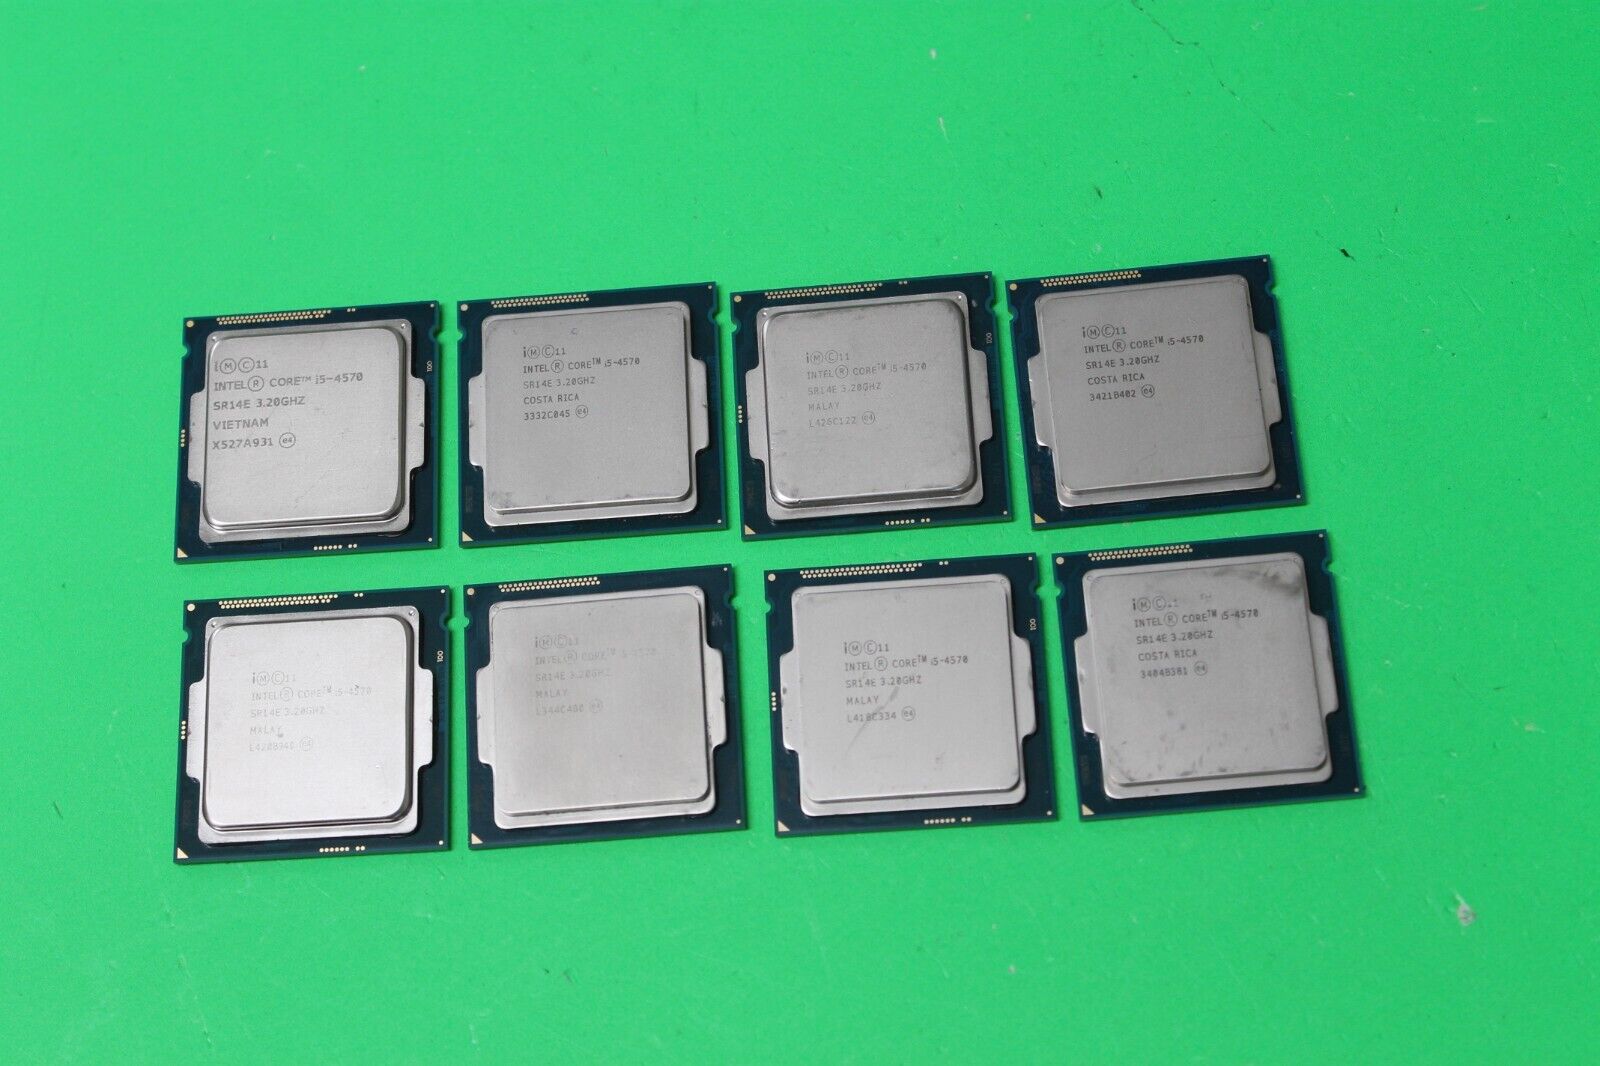 LOT OF 8 Intel Core i5-4570 Quad Core 3.20 GHz LGA1150 CPUs Processors SR14E